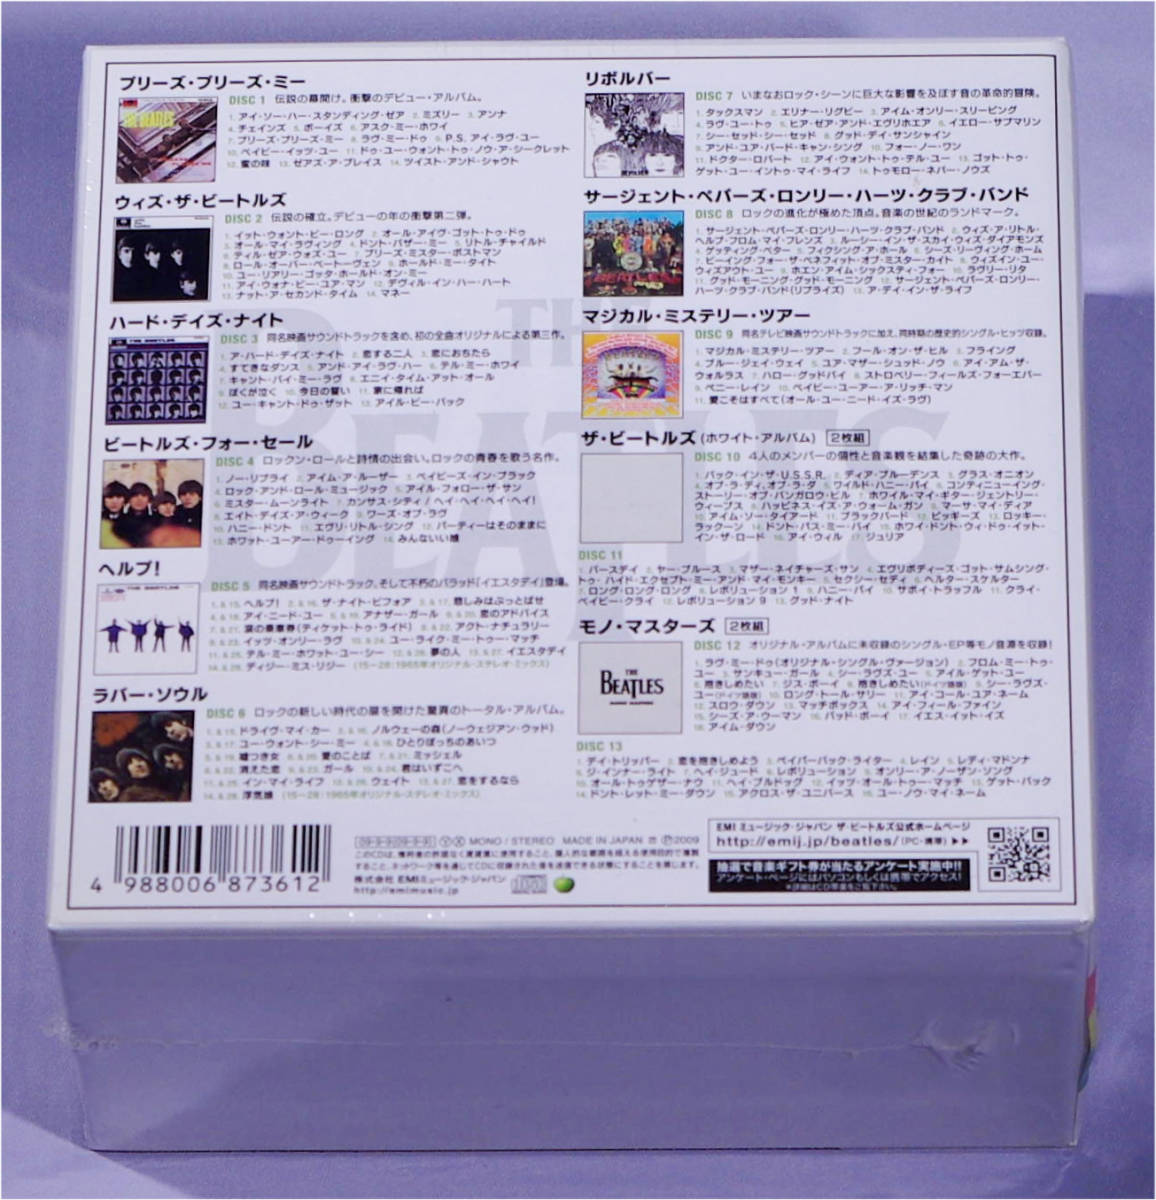 【新品・未開封】◆完全初回生産限定盤◆ ザ・ビートルズ MONO BOX 13CD(11タイトル) 紙ジャケット仕様_画像3